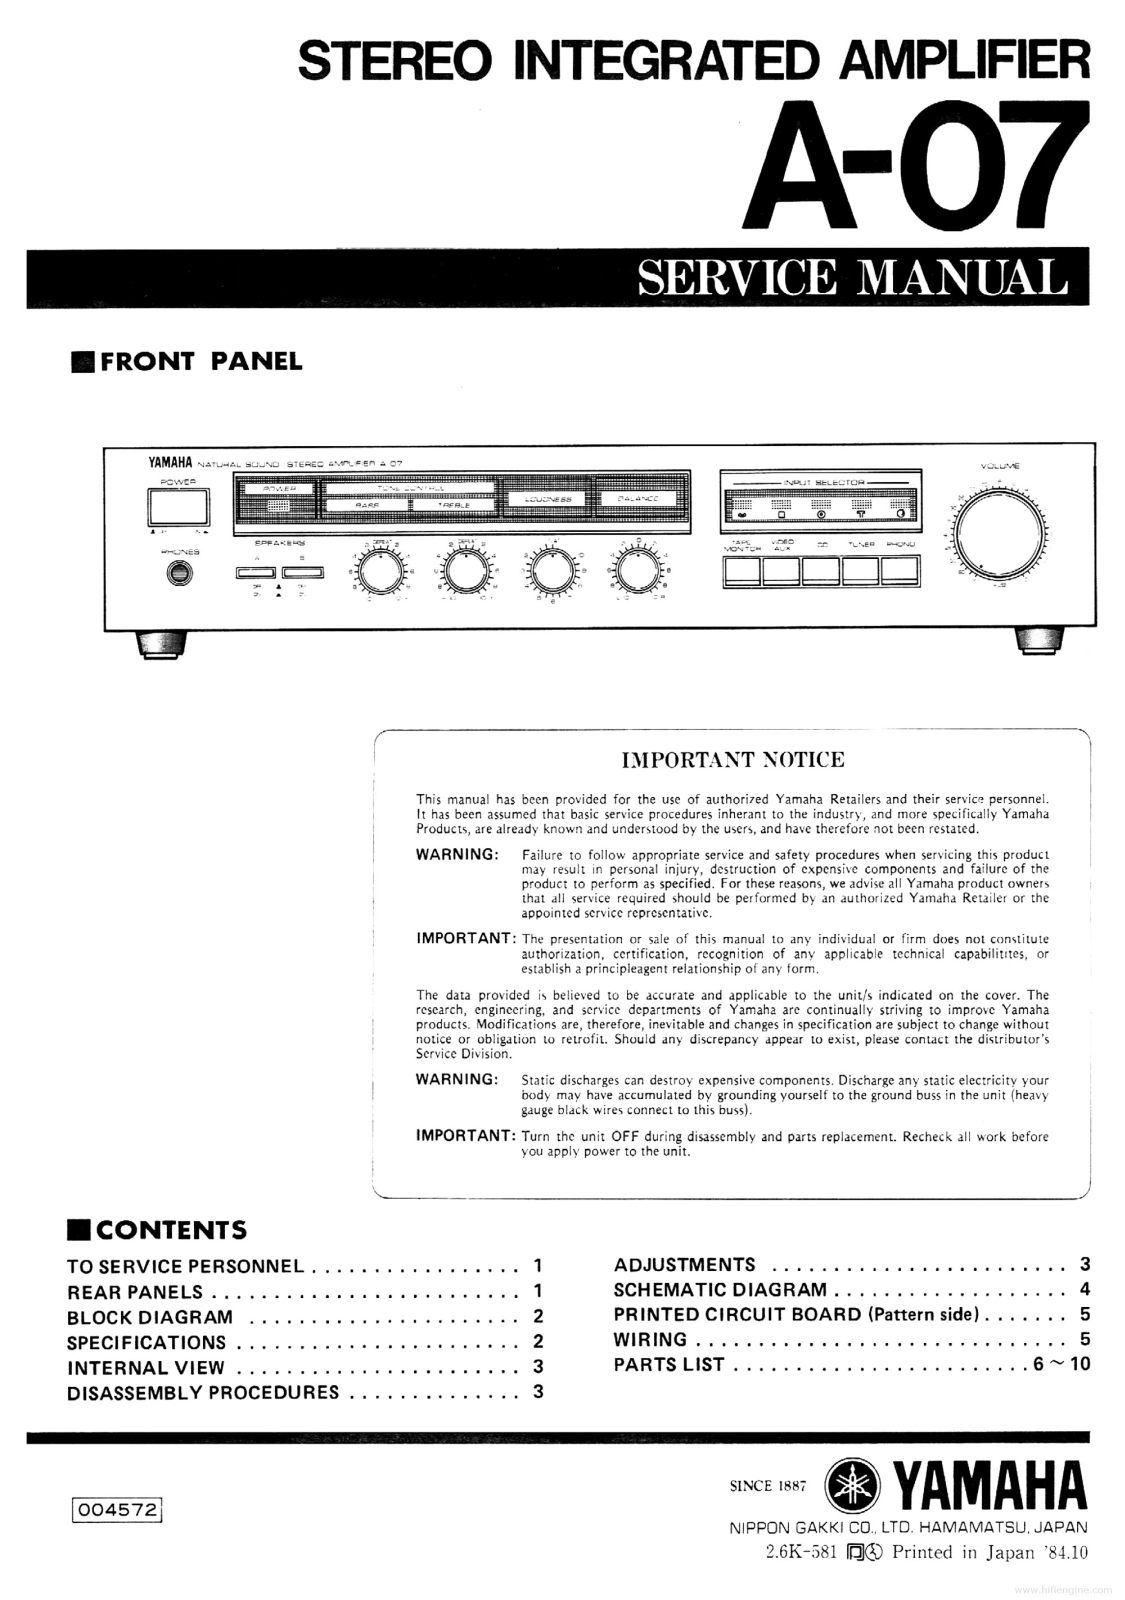 Yamaha A-07 User Manual